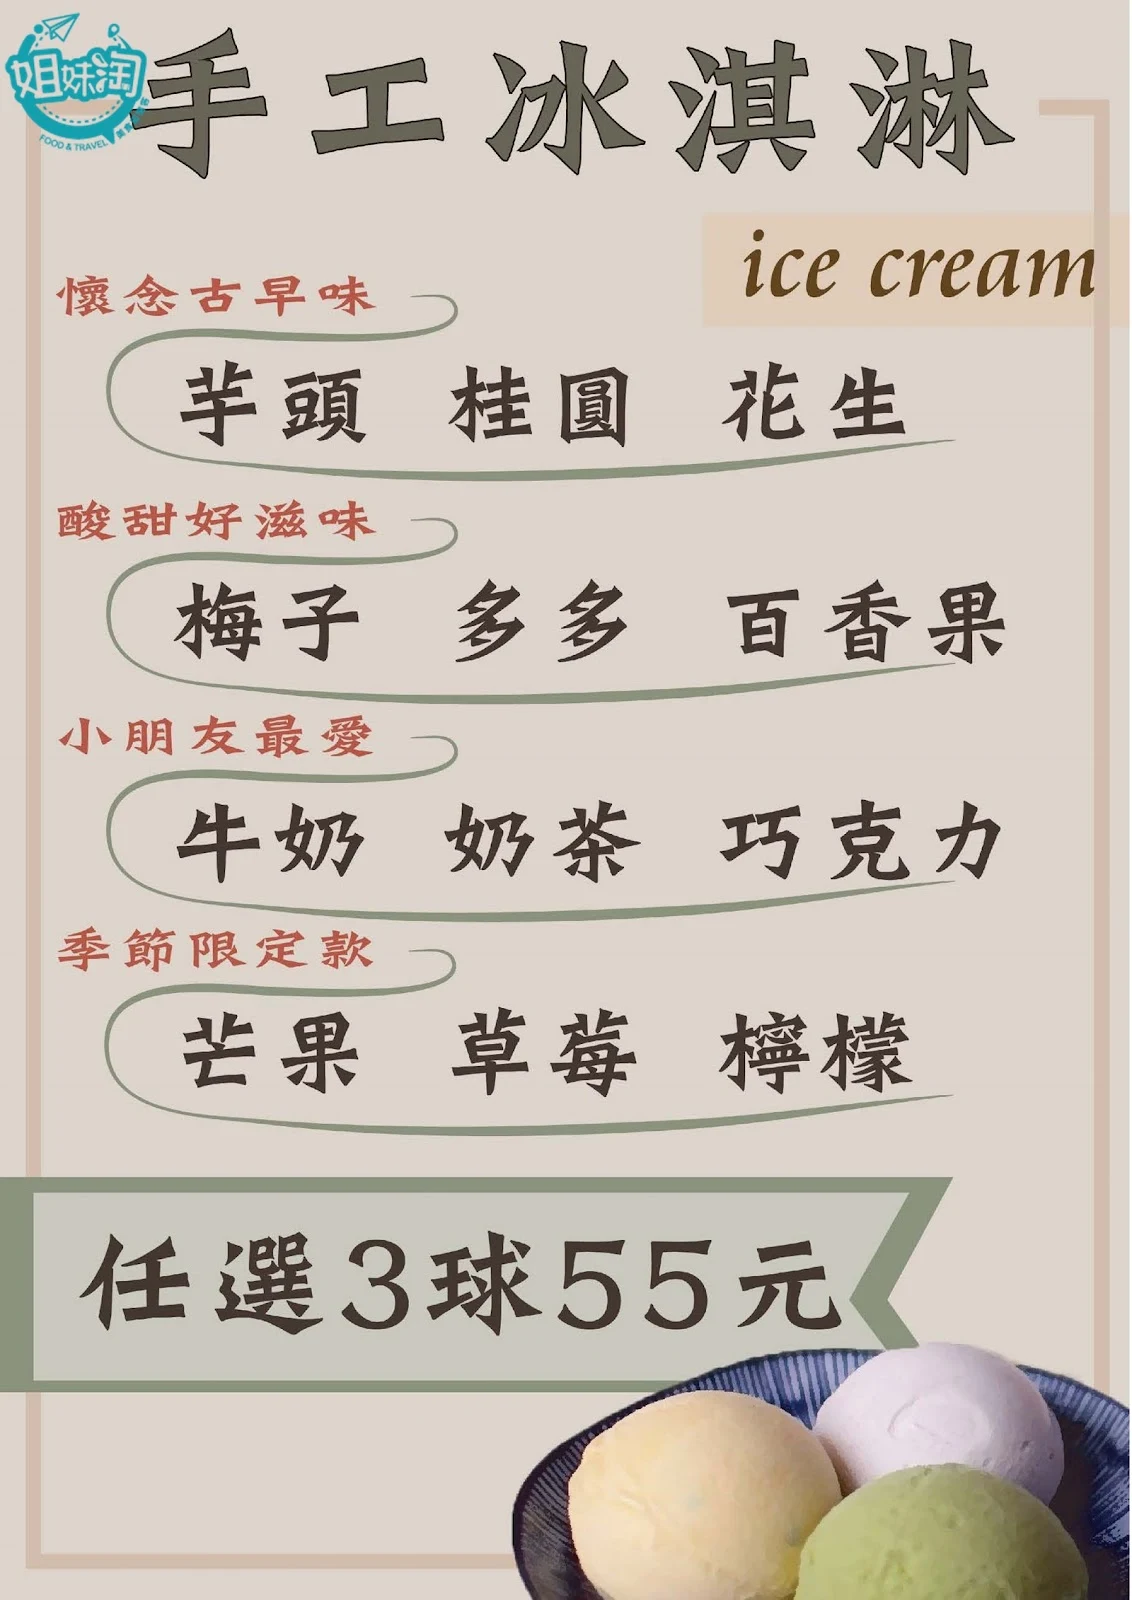 台興芋冰城菜單